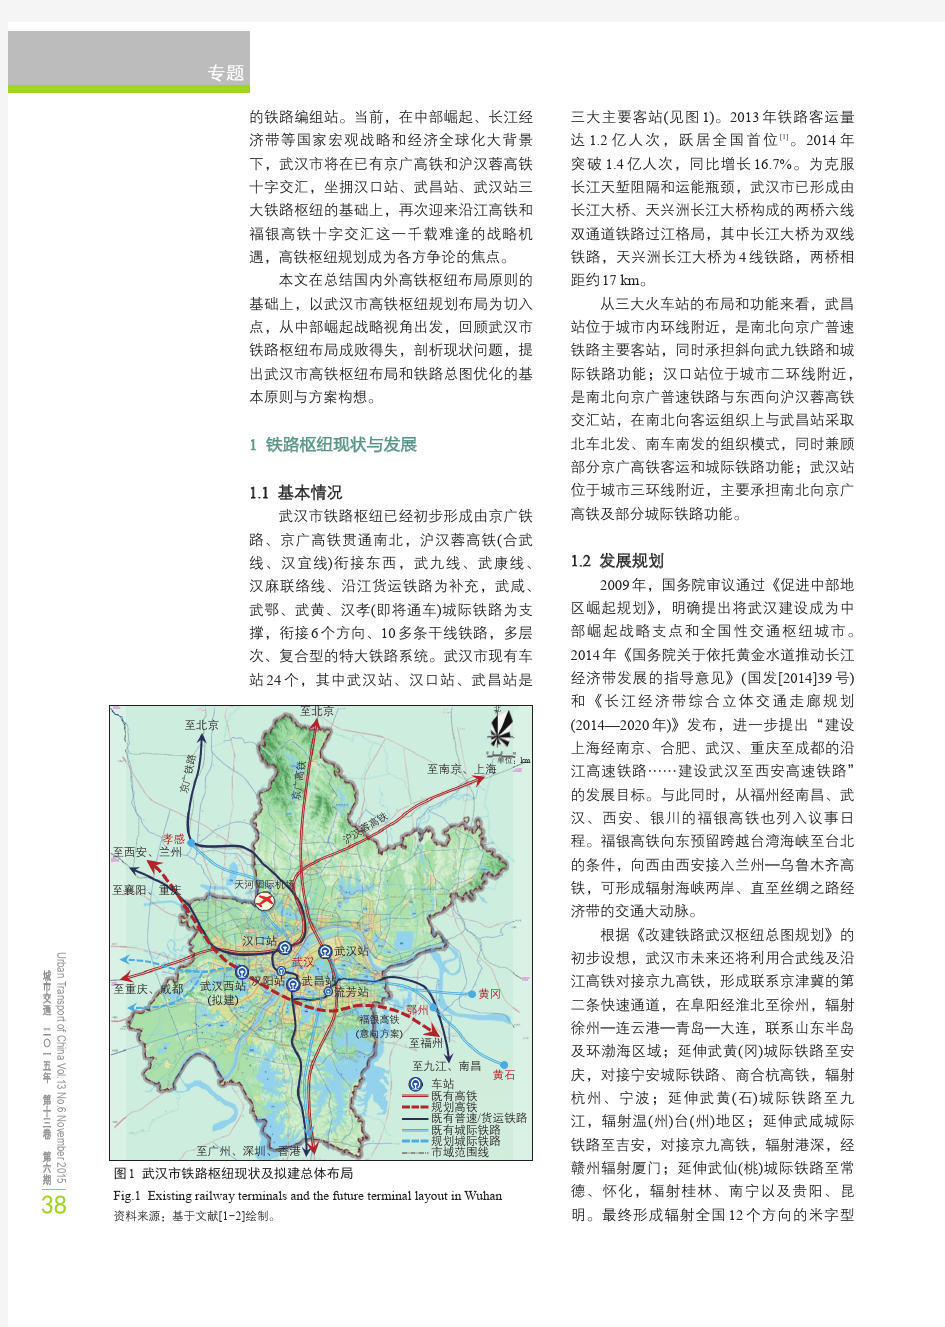 武汉市高铁枢纽选址及铁路总体布局优化